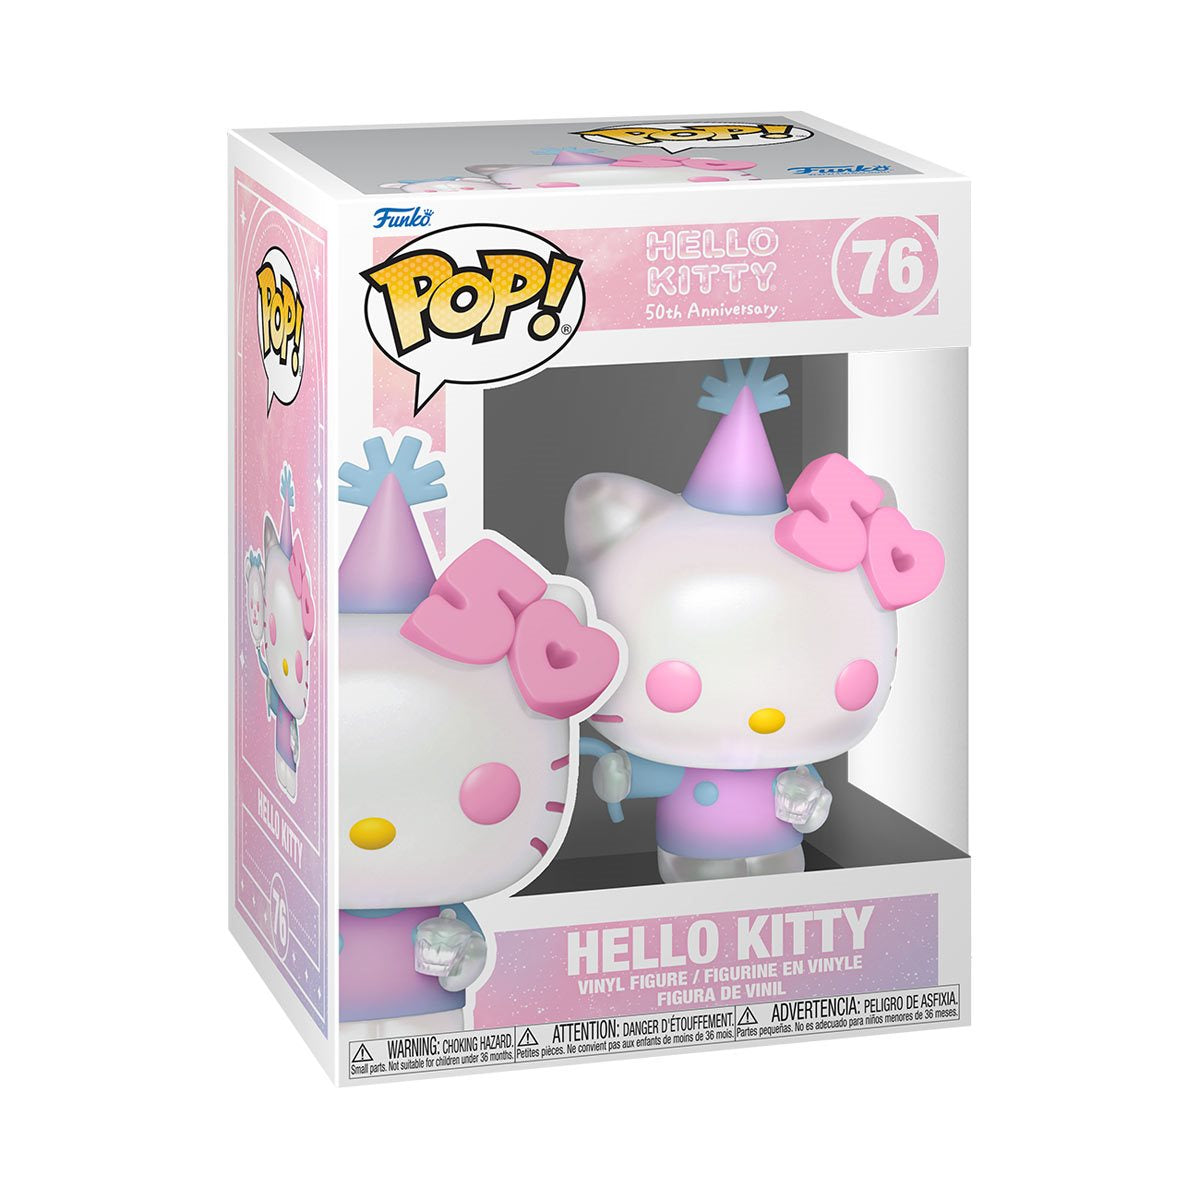 Hello Kitty 50th Anniversary Hello Kitty with BALLOON Funko Pop! Vinyl Figure #76